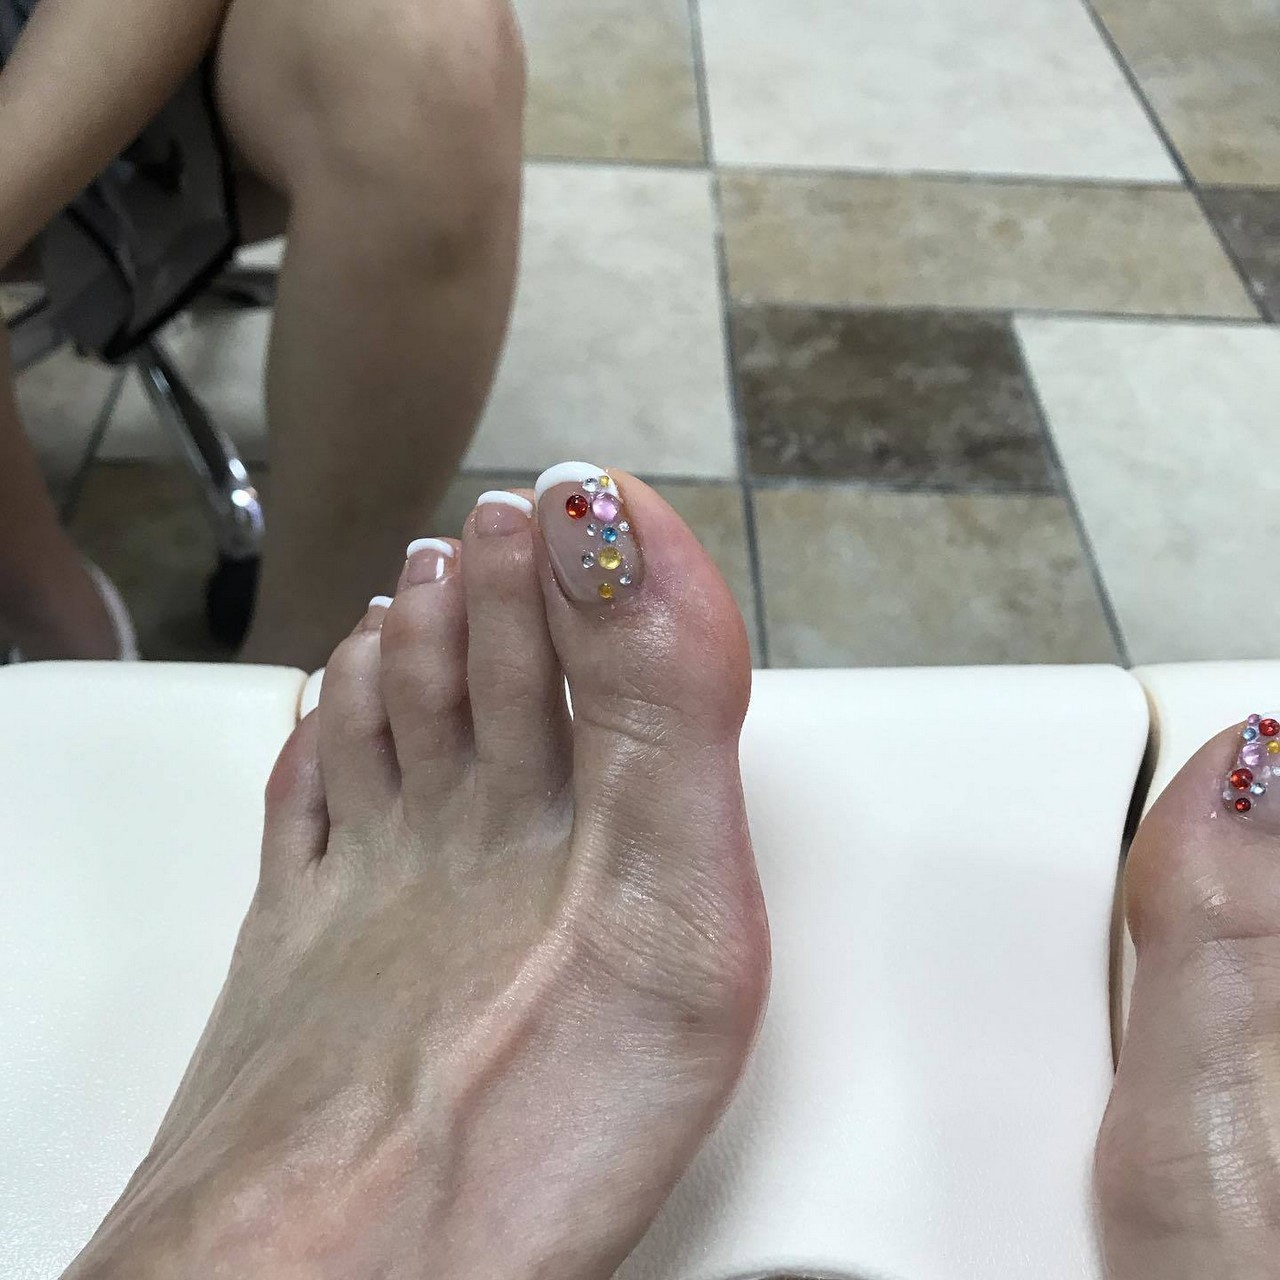 Lauren Sugihara Feet